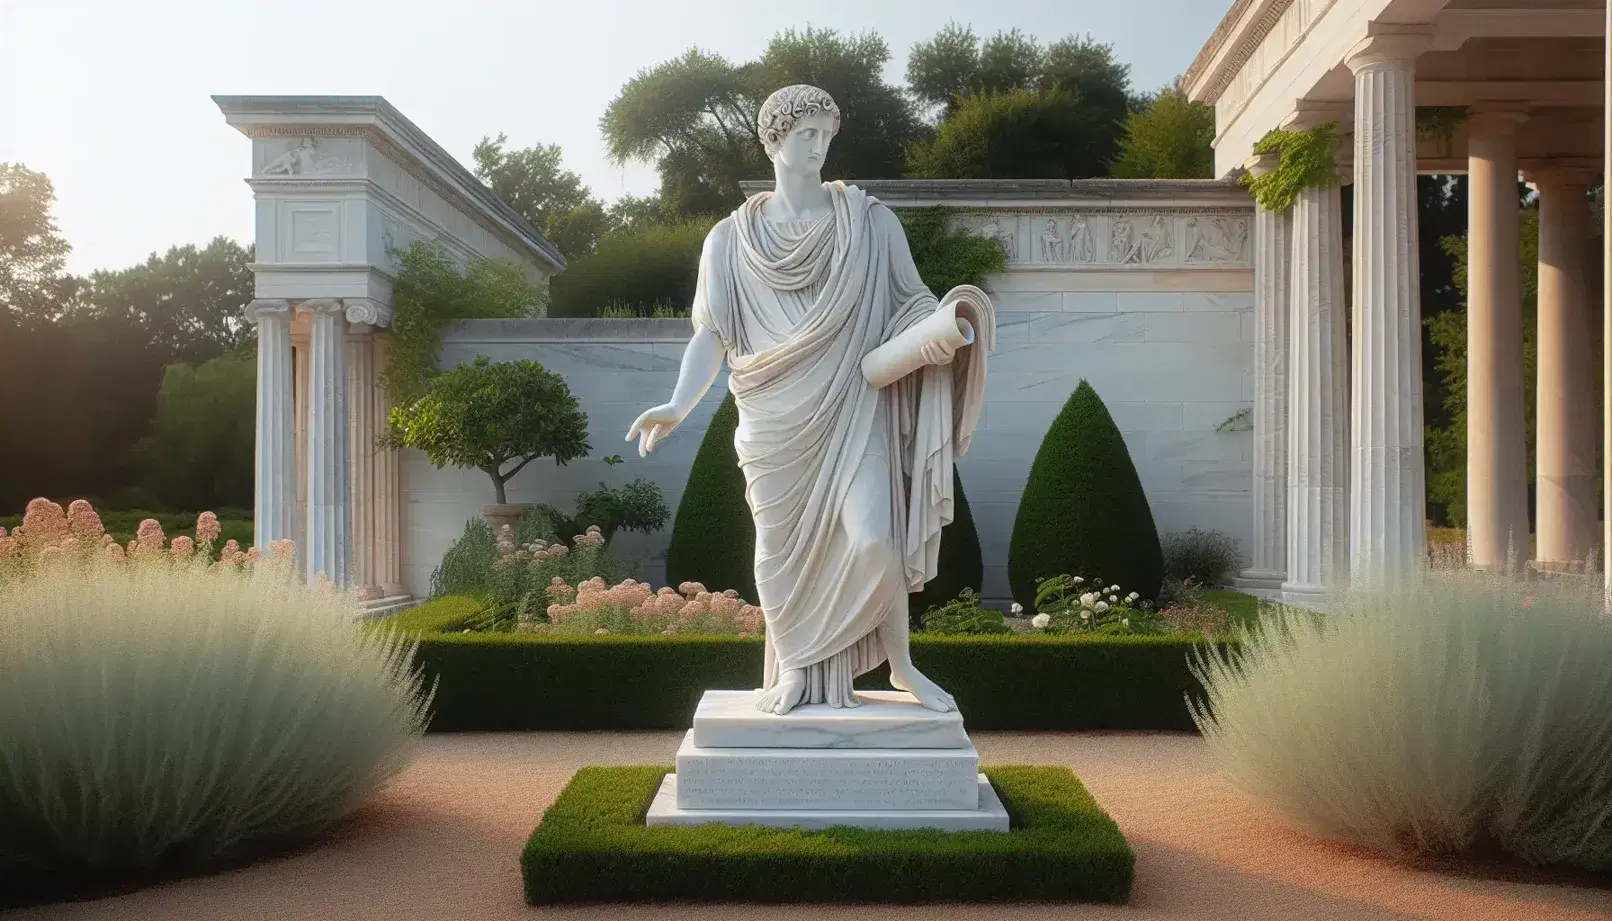 Estatua de mármol blanco de hombre con túnica sosteniendo un pergamino en jardín clásico con columnas de piedra y cielo despejado.